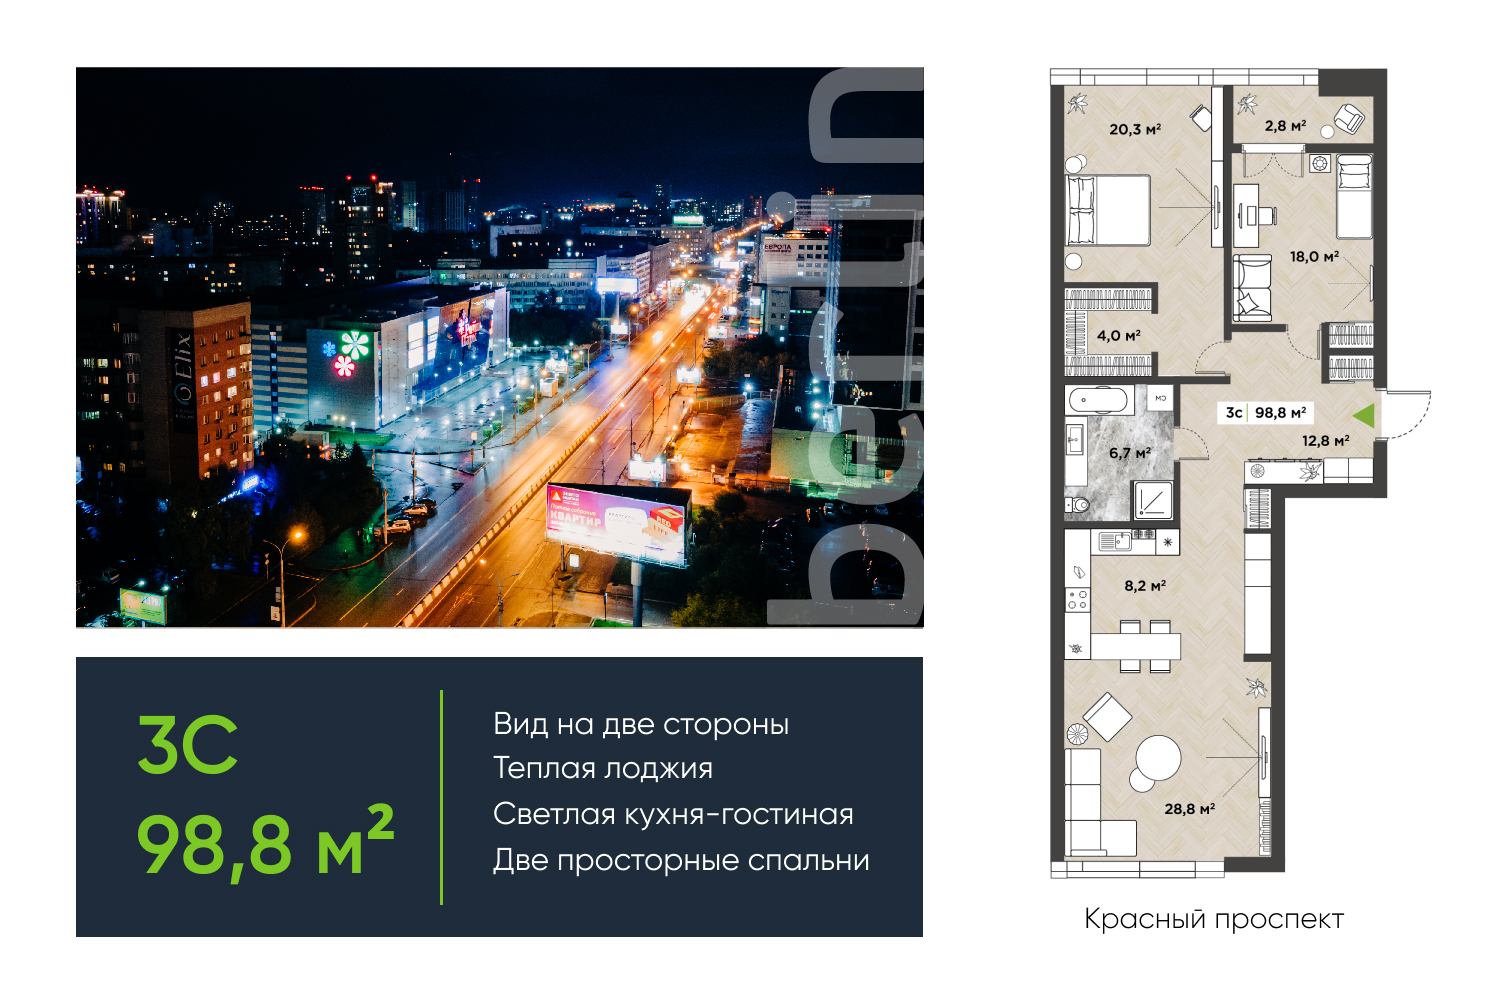 Дом Berlin: квартиры с видом на Красный проспект со скидкой до ₽3,6 млн